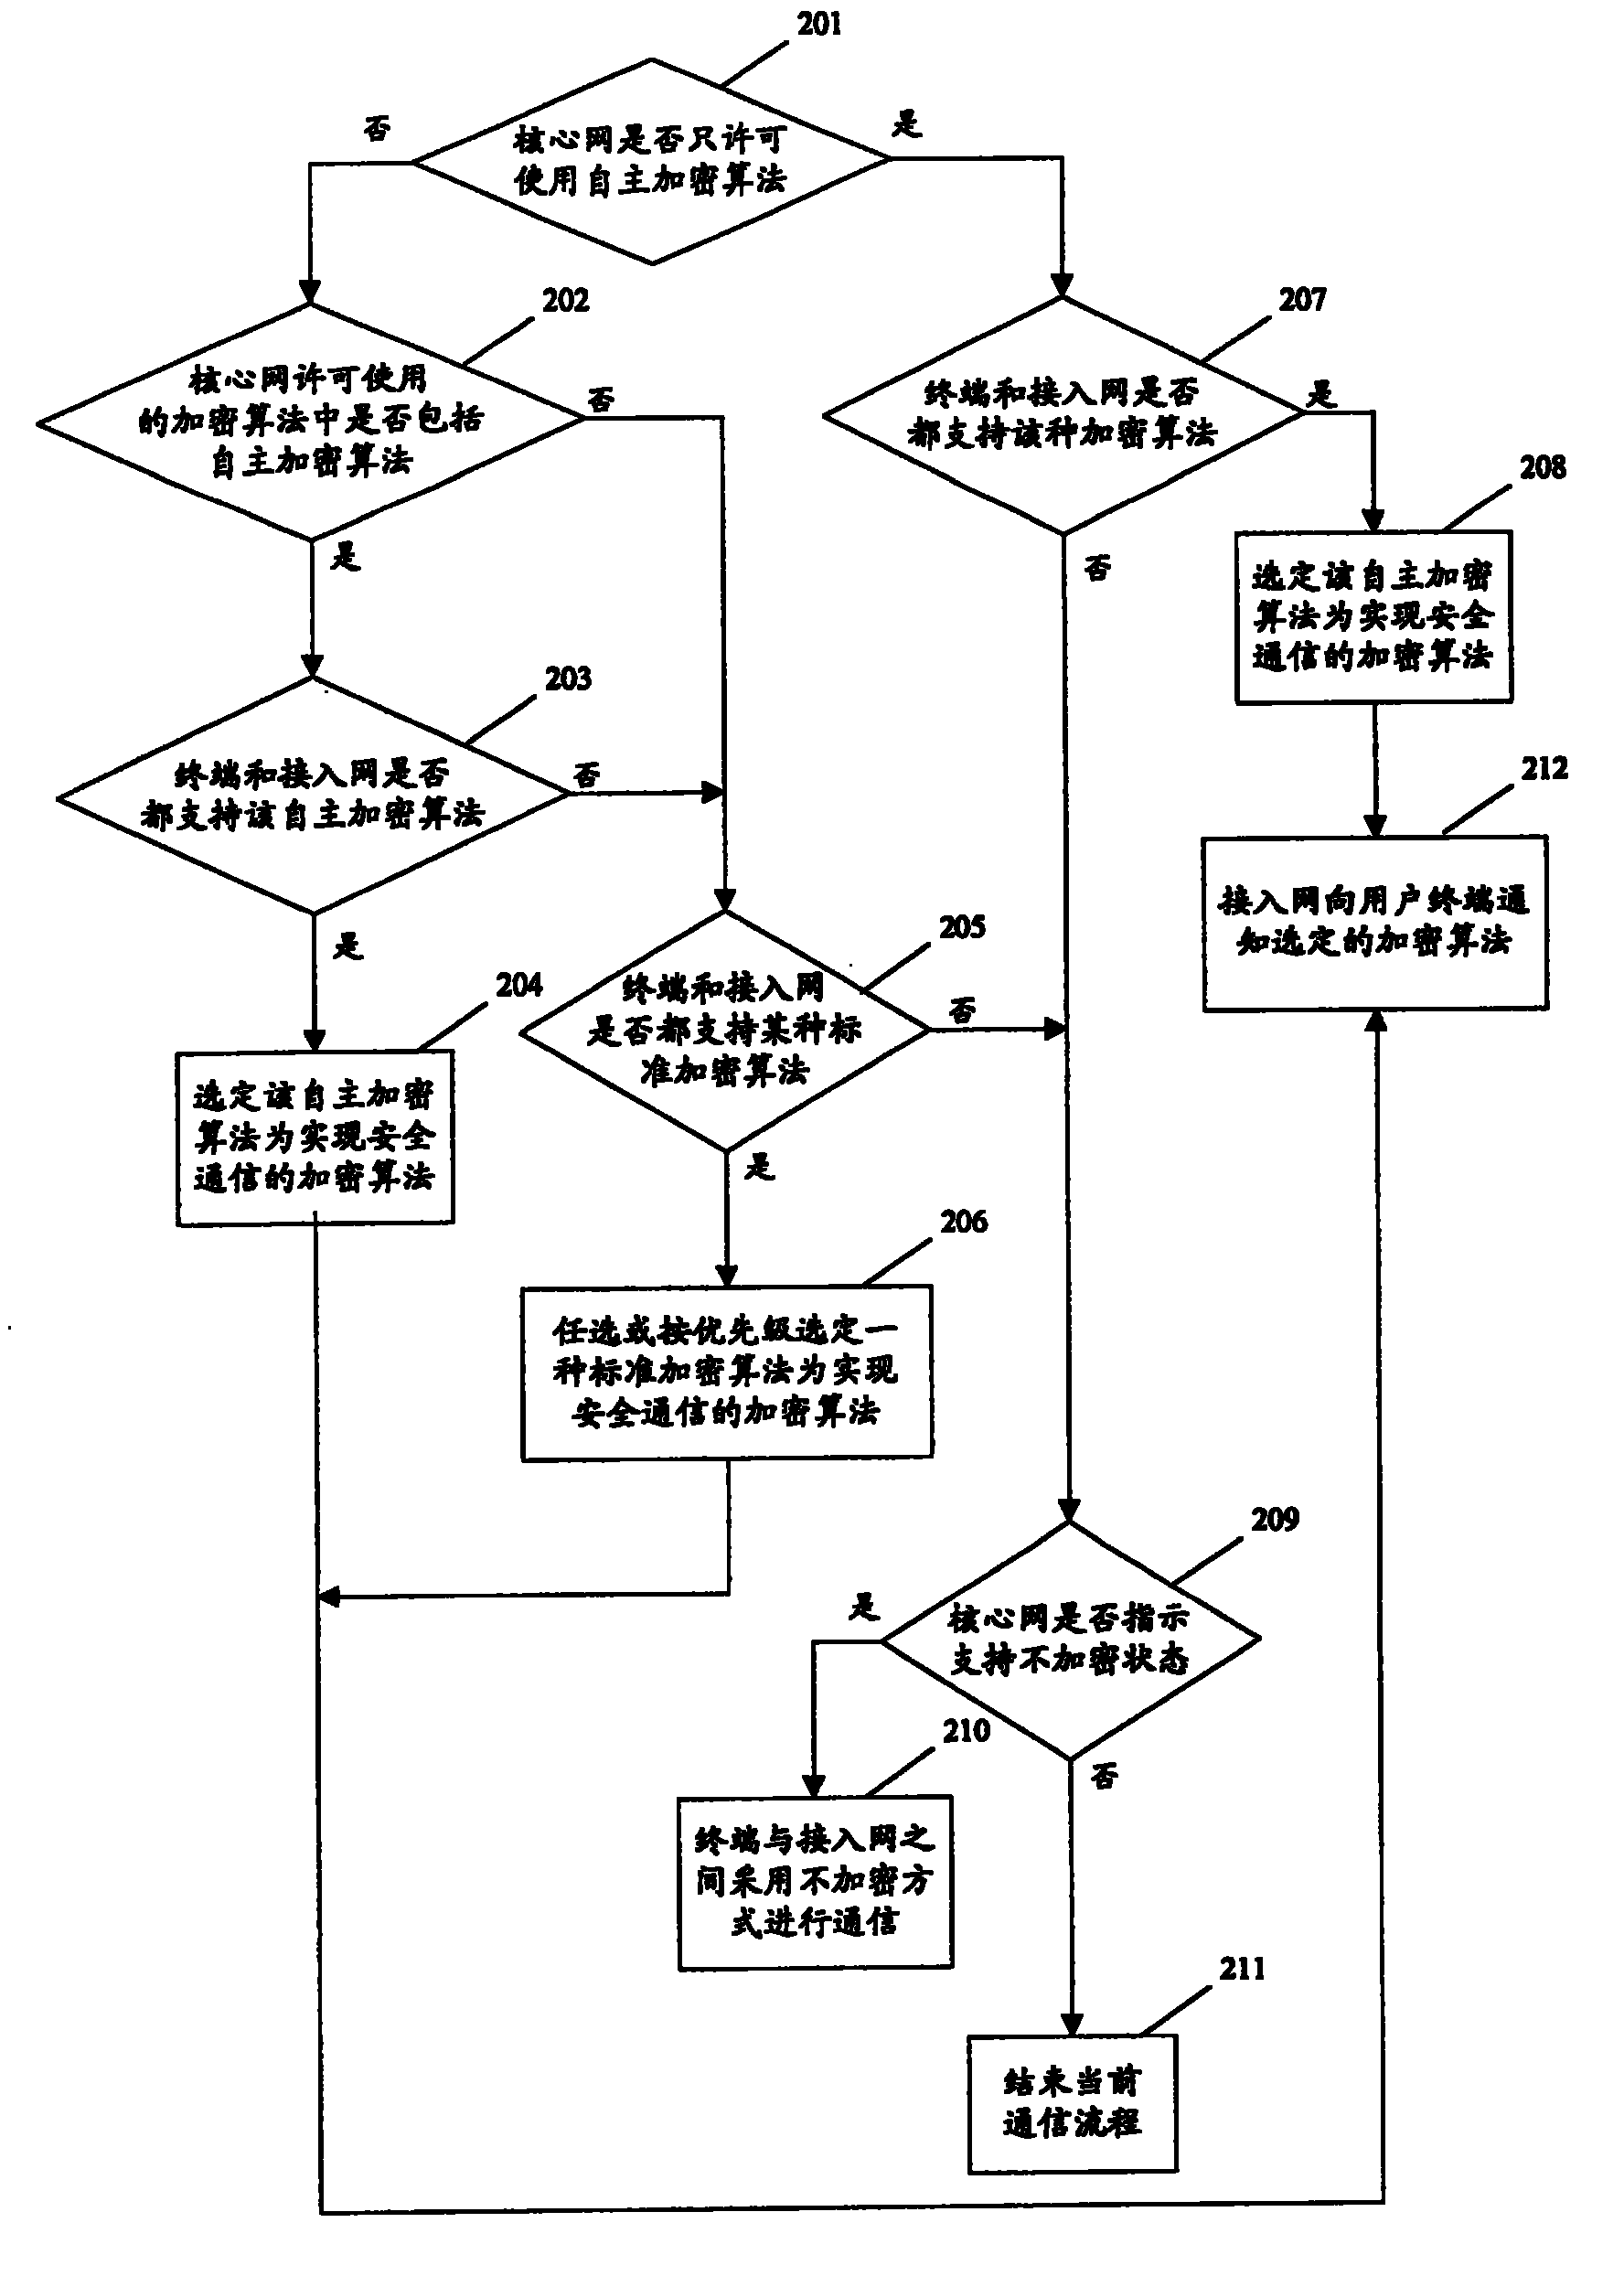 Method of selecting safety communication algorithm